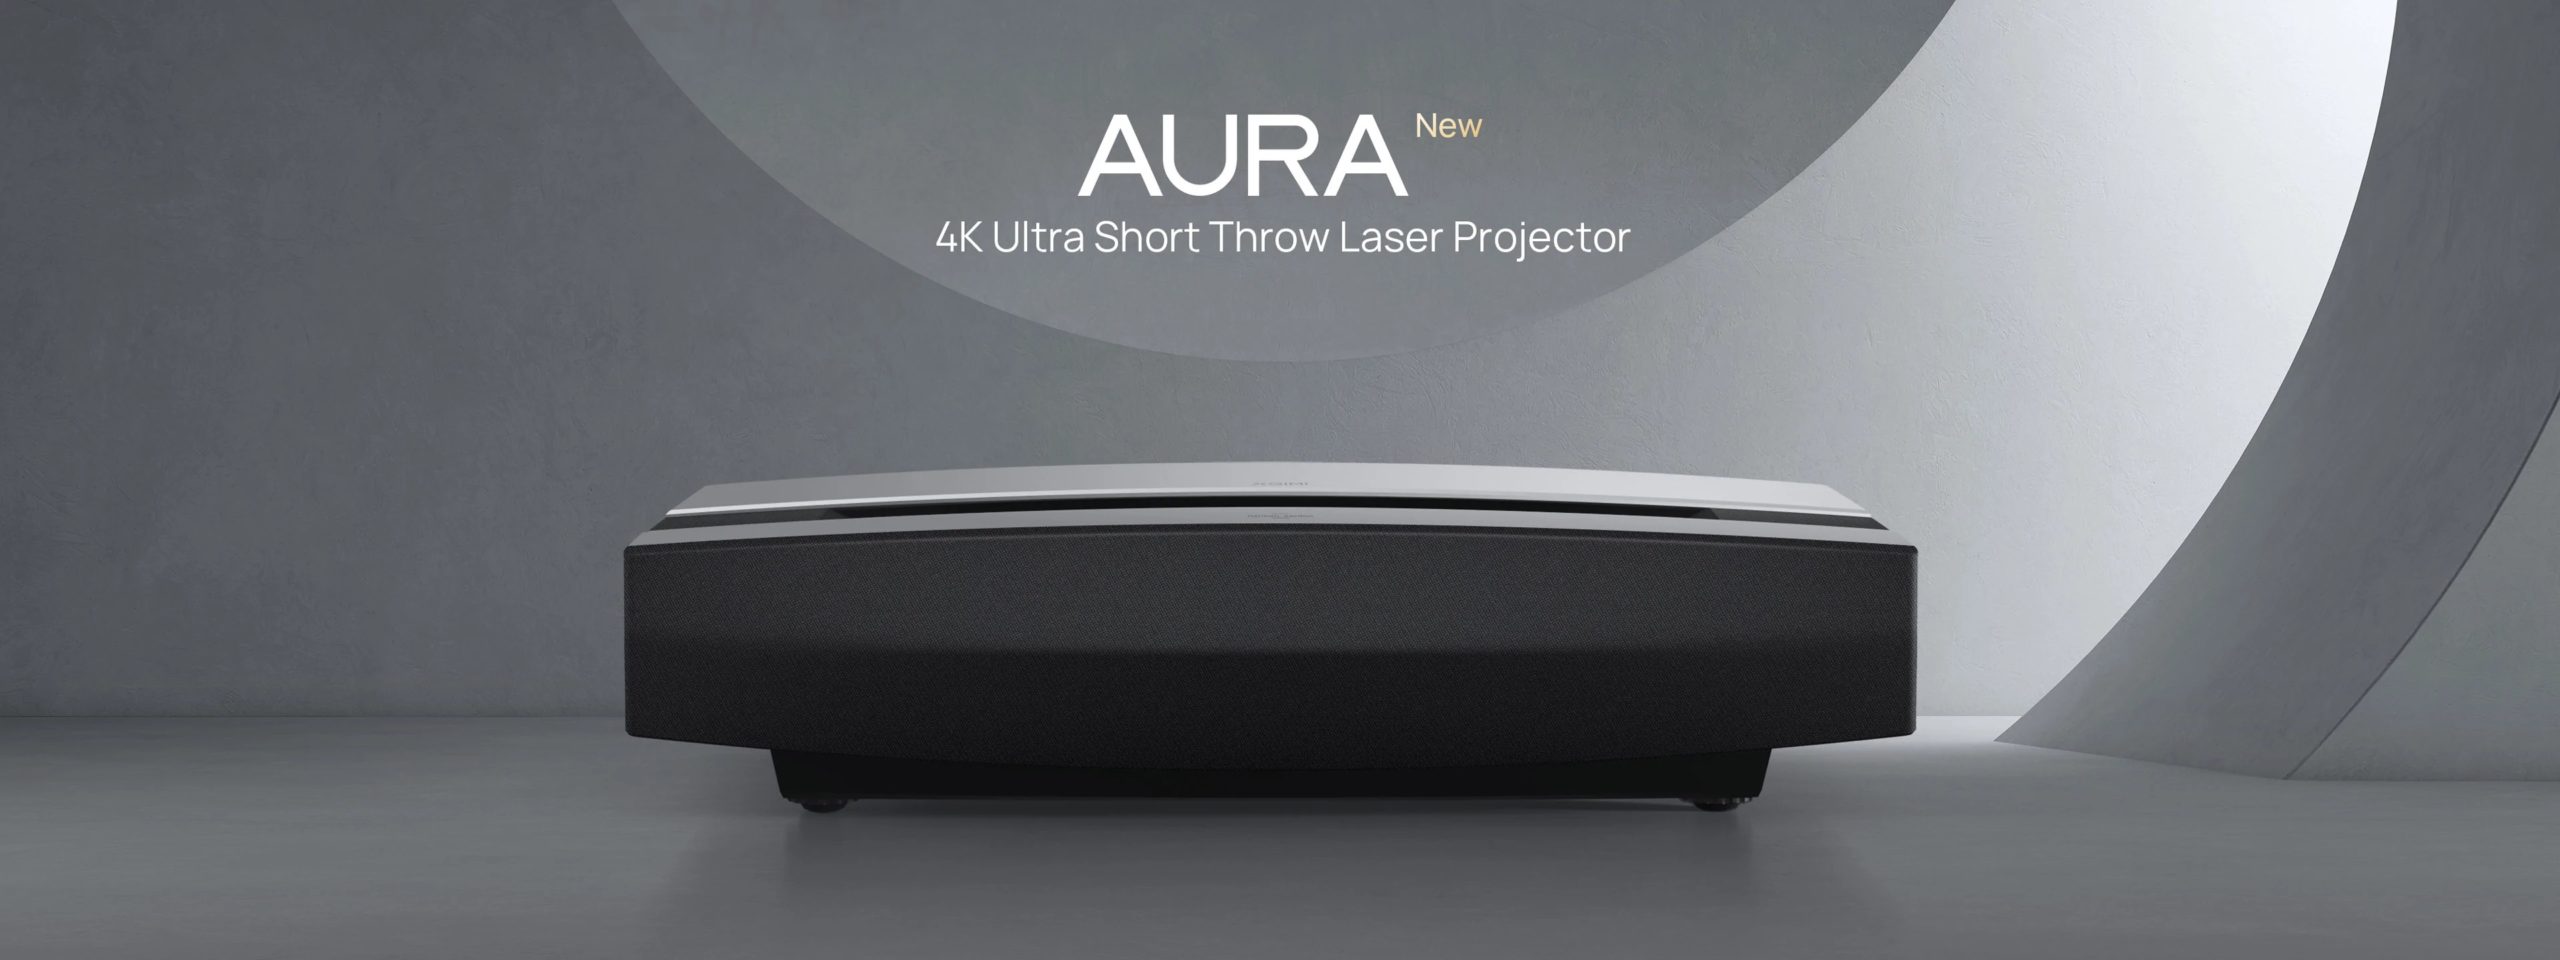 Xgimi projektor Aura 4K Laser TV